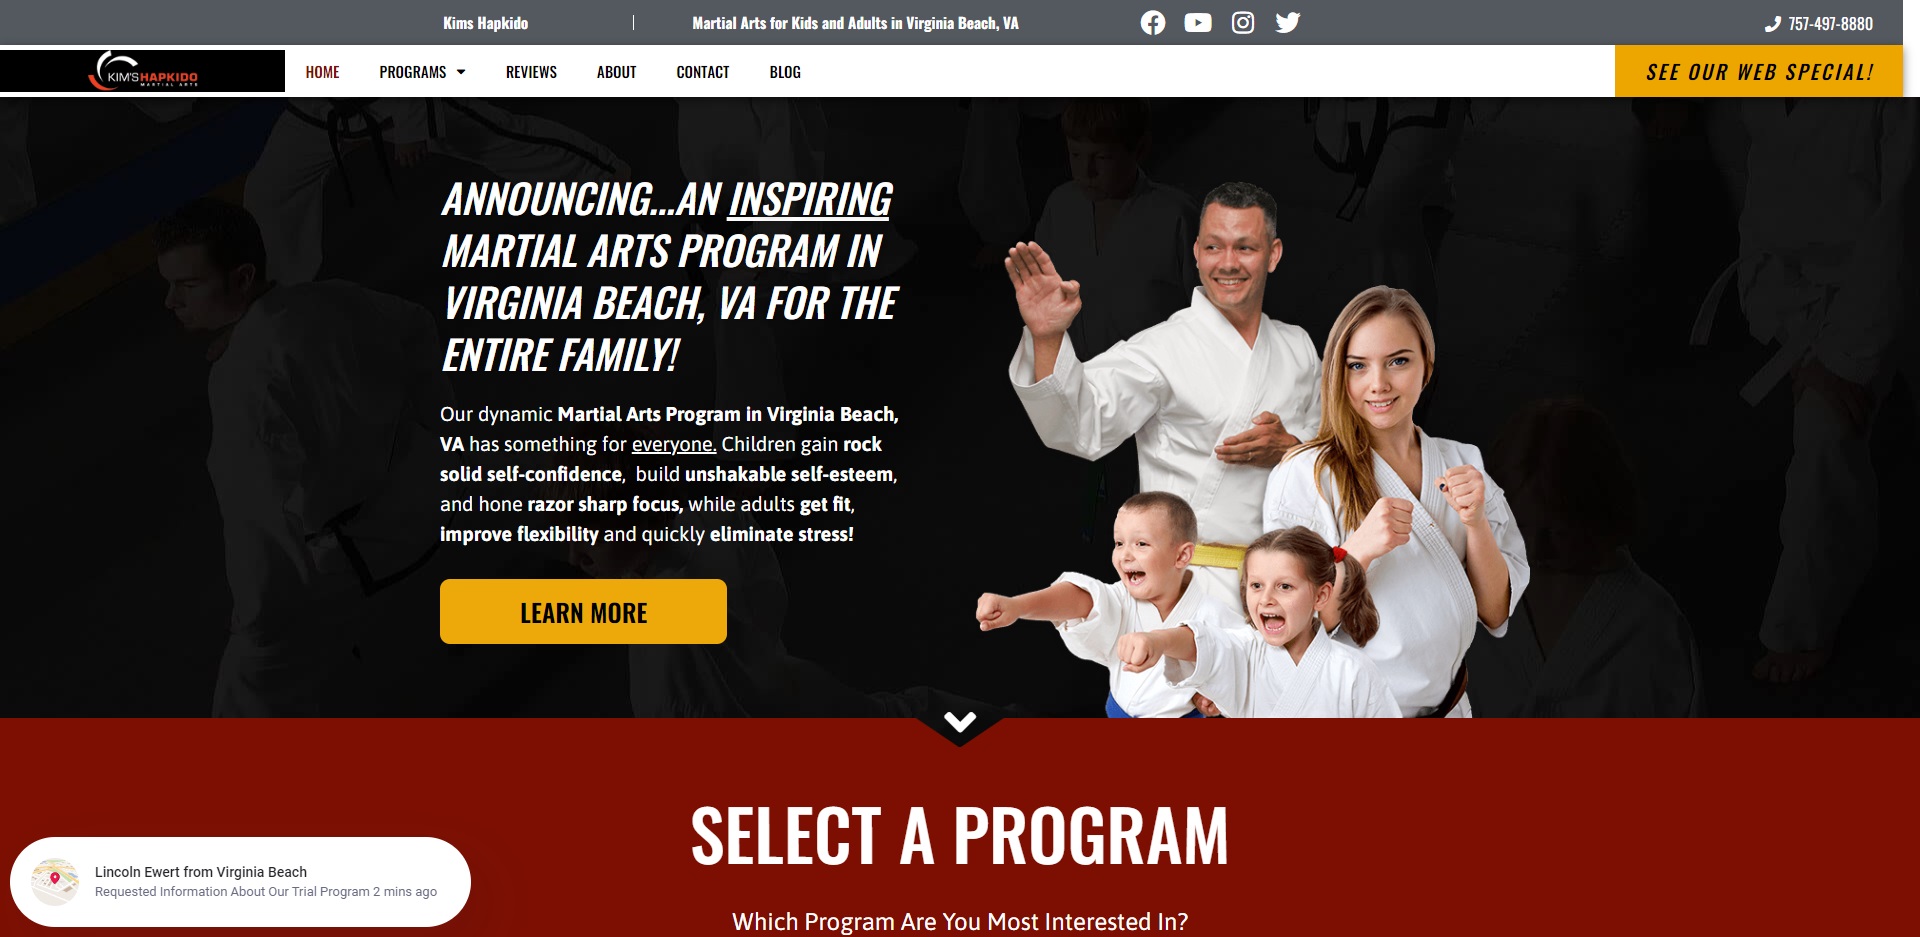 The Best Martial Arts Classes in Virginia Beach, VA